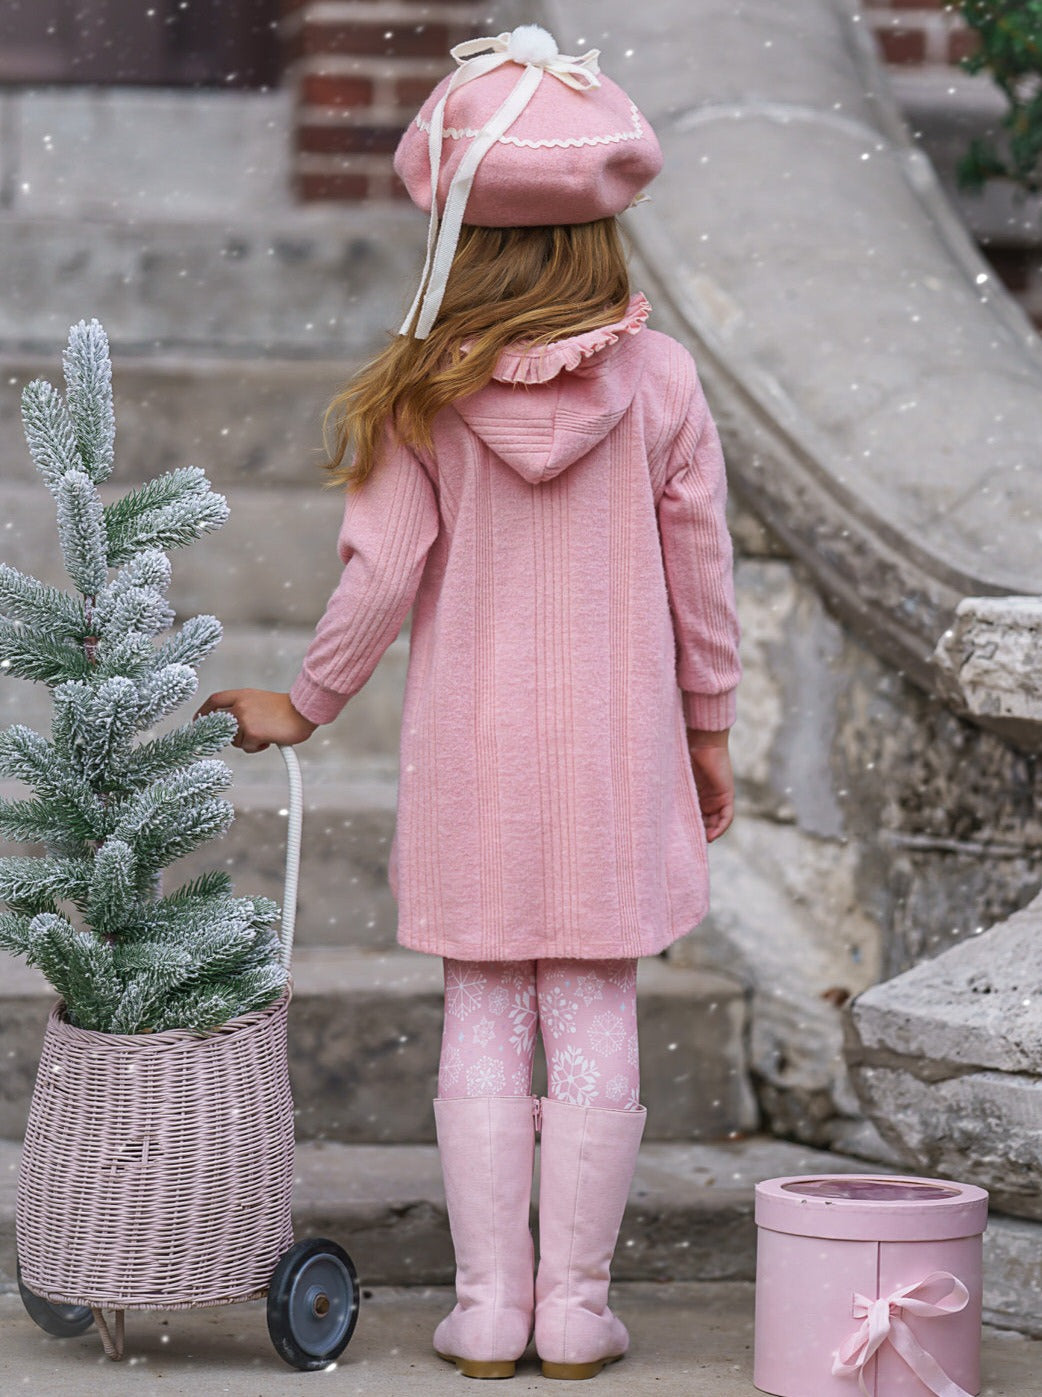 Mia Belle Girls Hoodie & Snowflake Leggings Set | Girls Winter Outfits